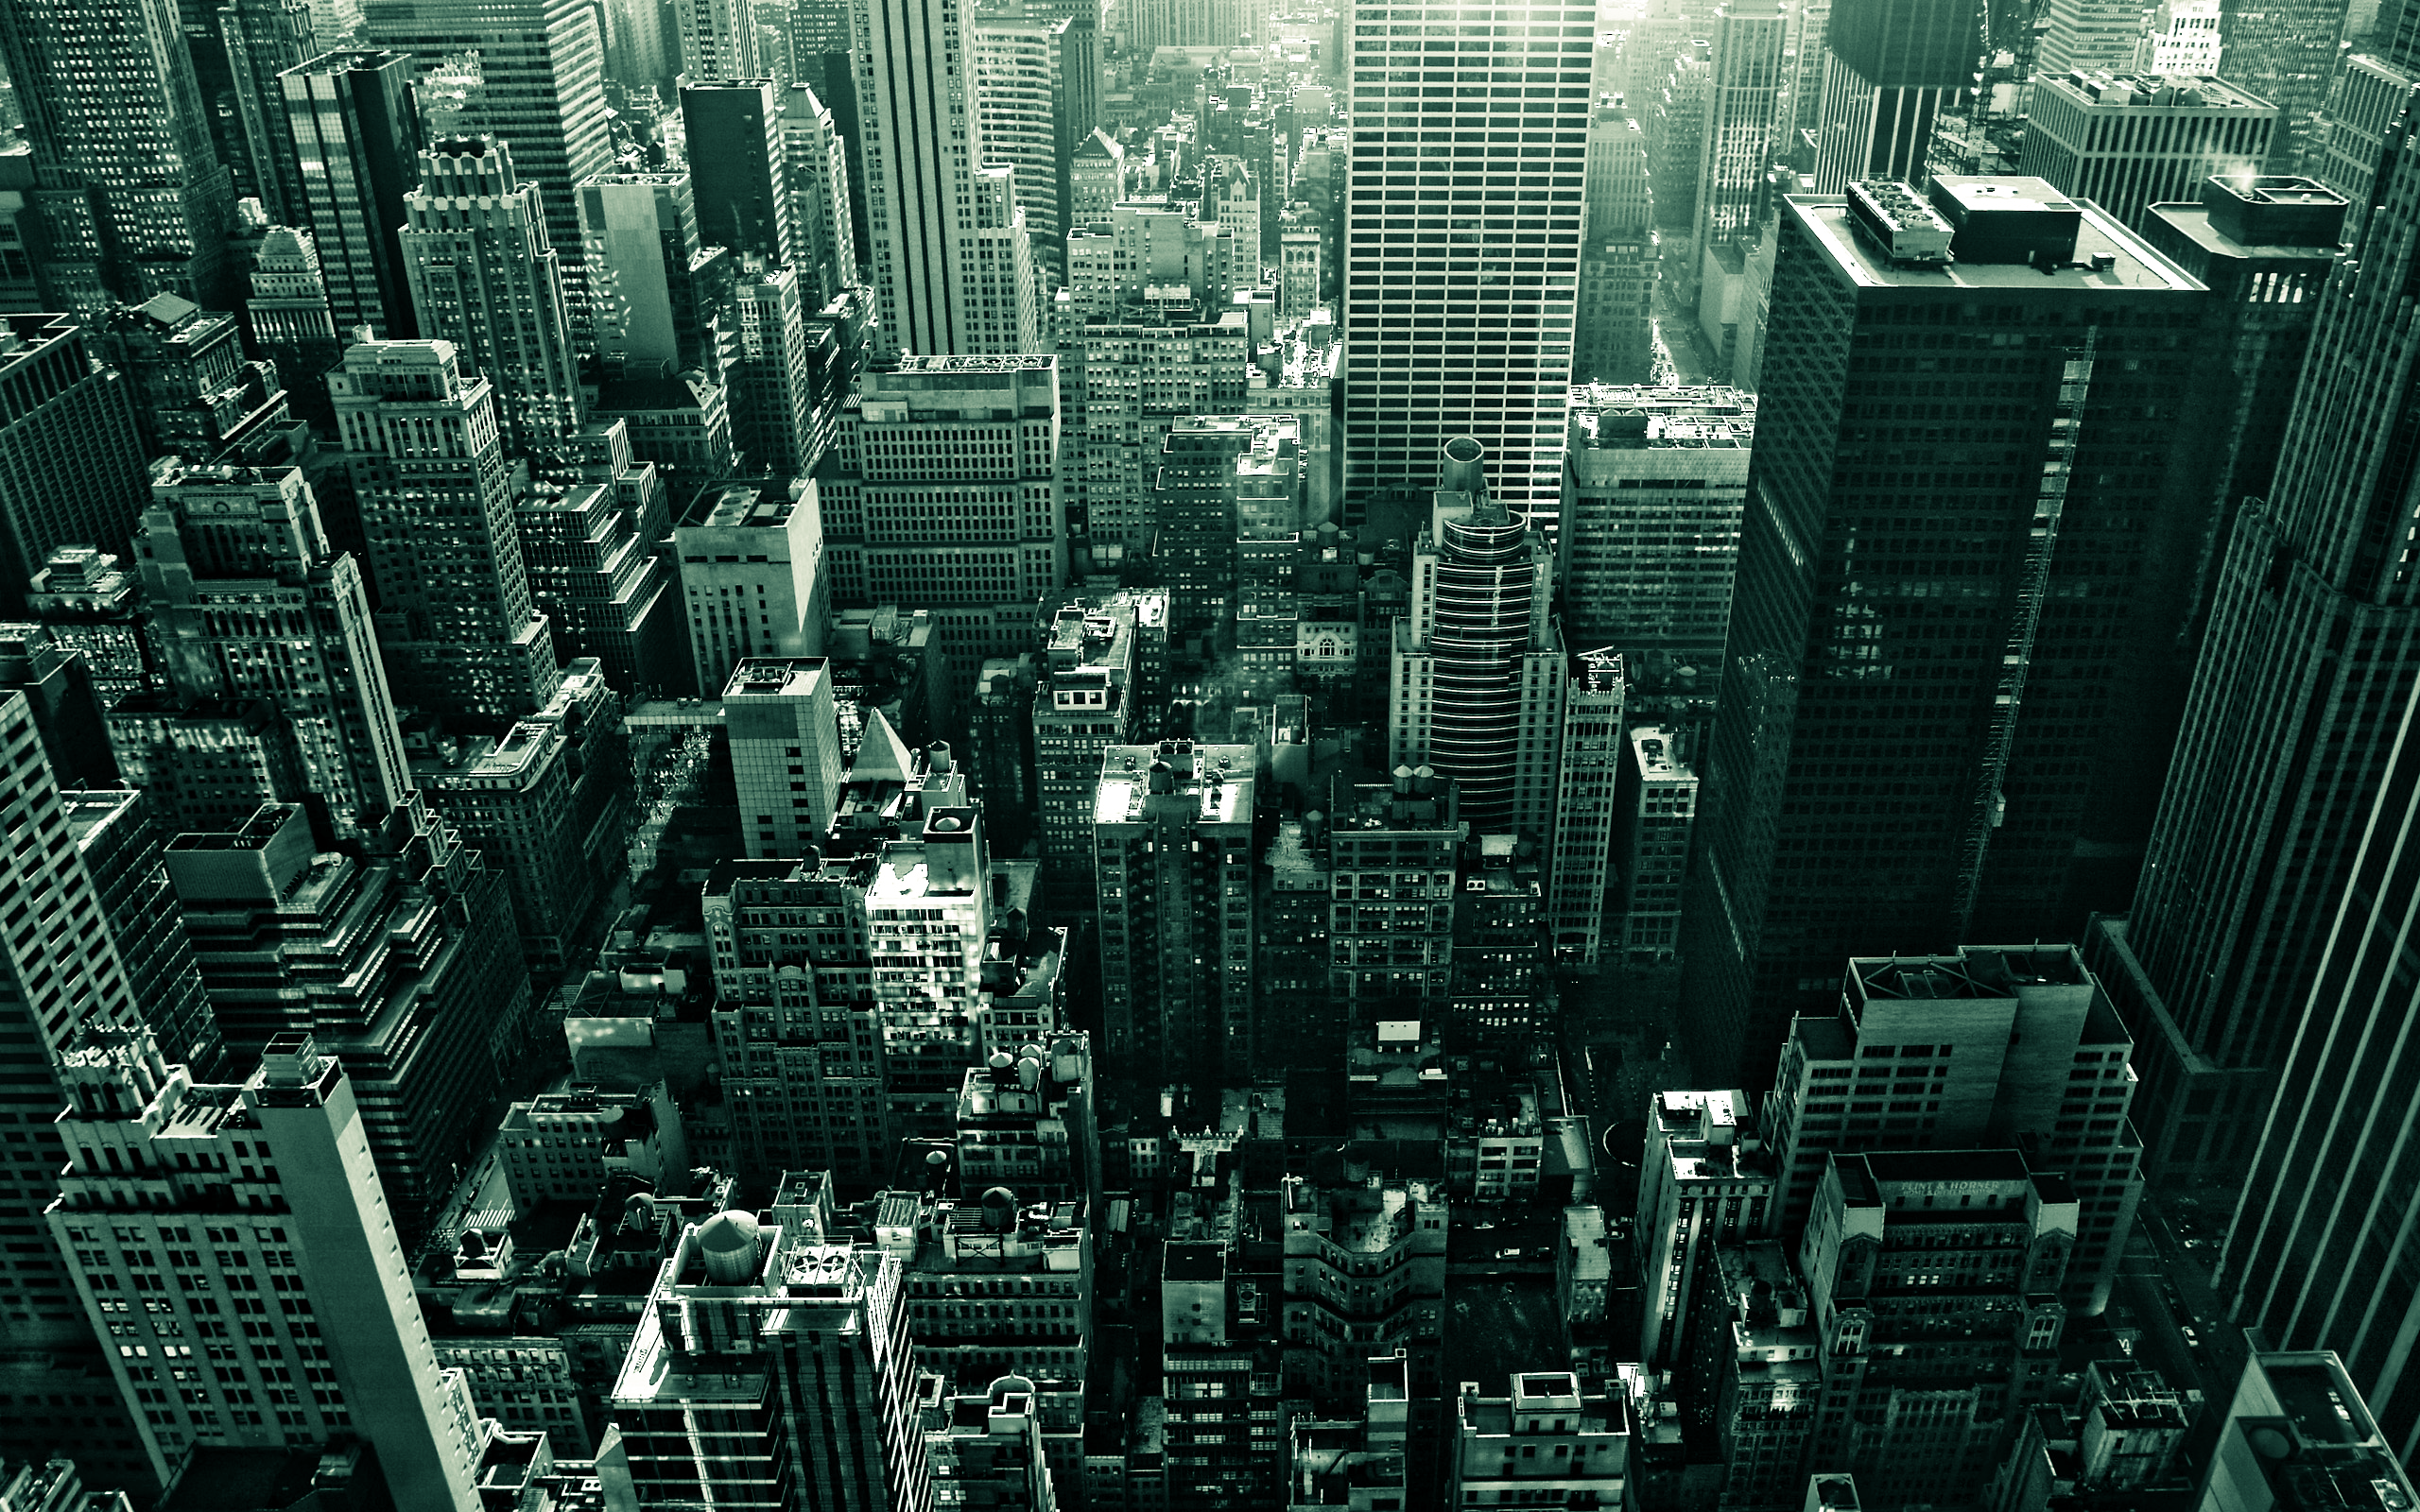 cityscapes, buildings, cities - desktop wallpaper